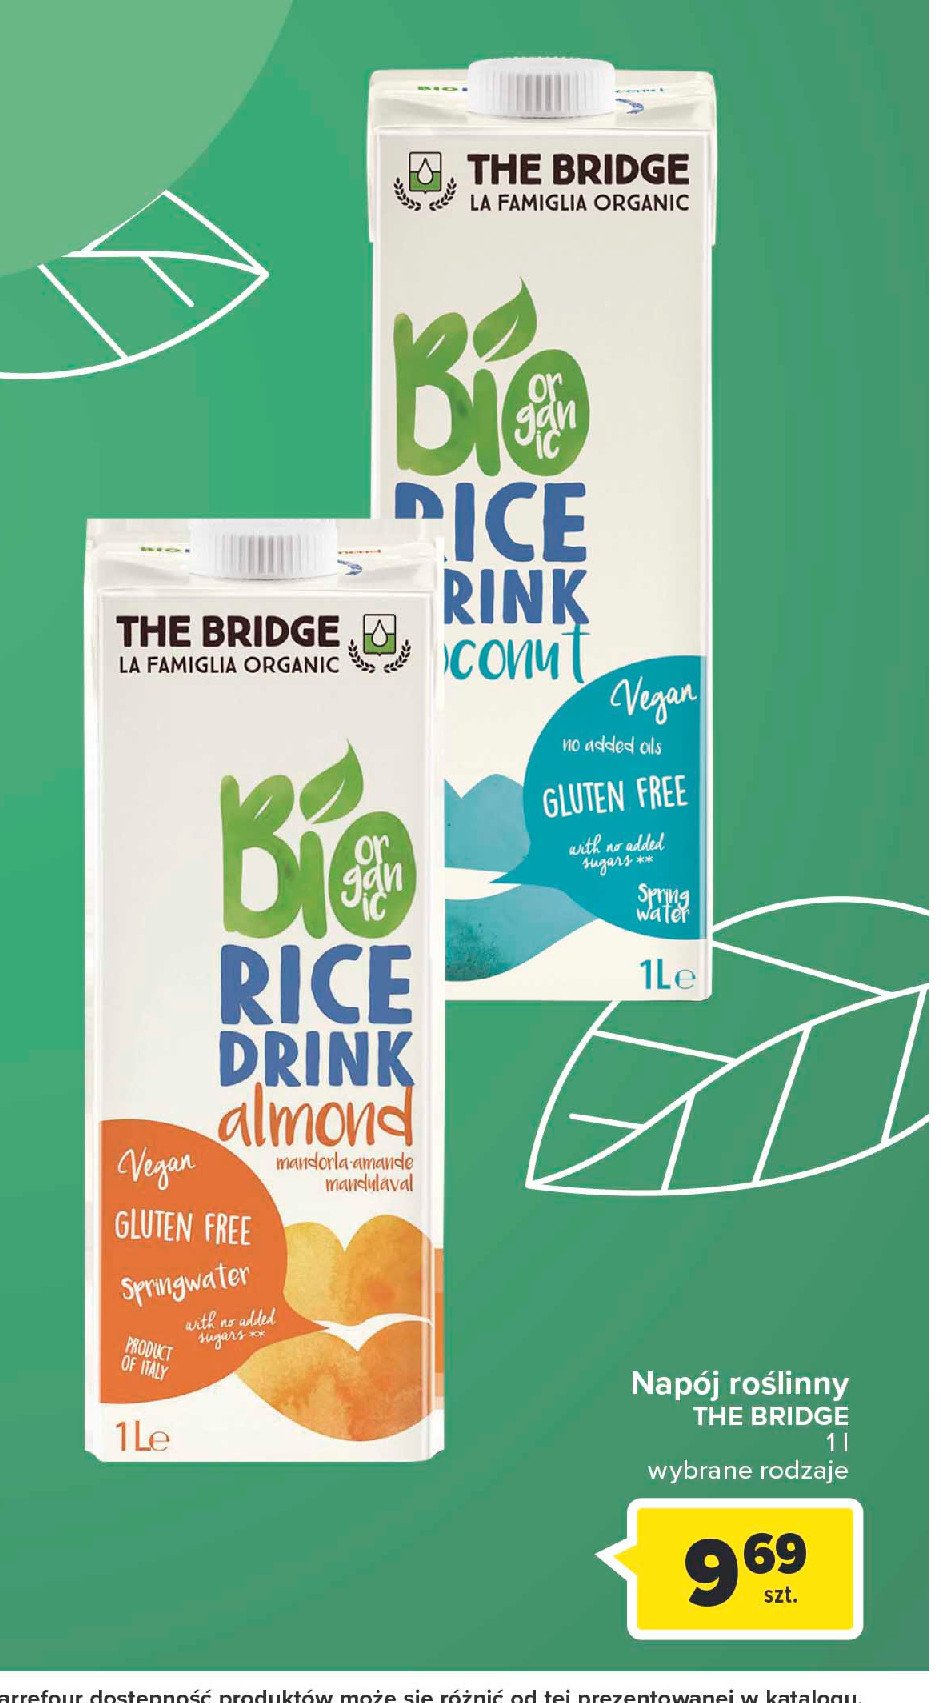 Napój ryżowo-migdałowy THE BRIDGE promocja